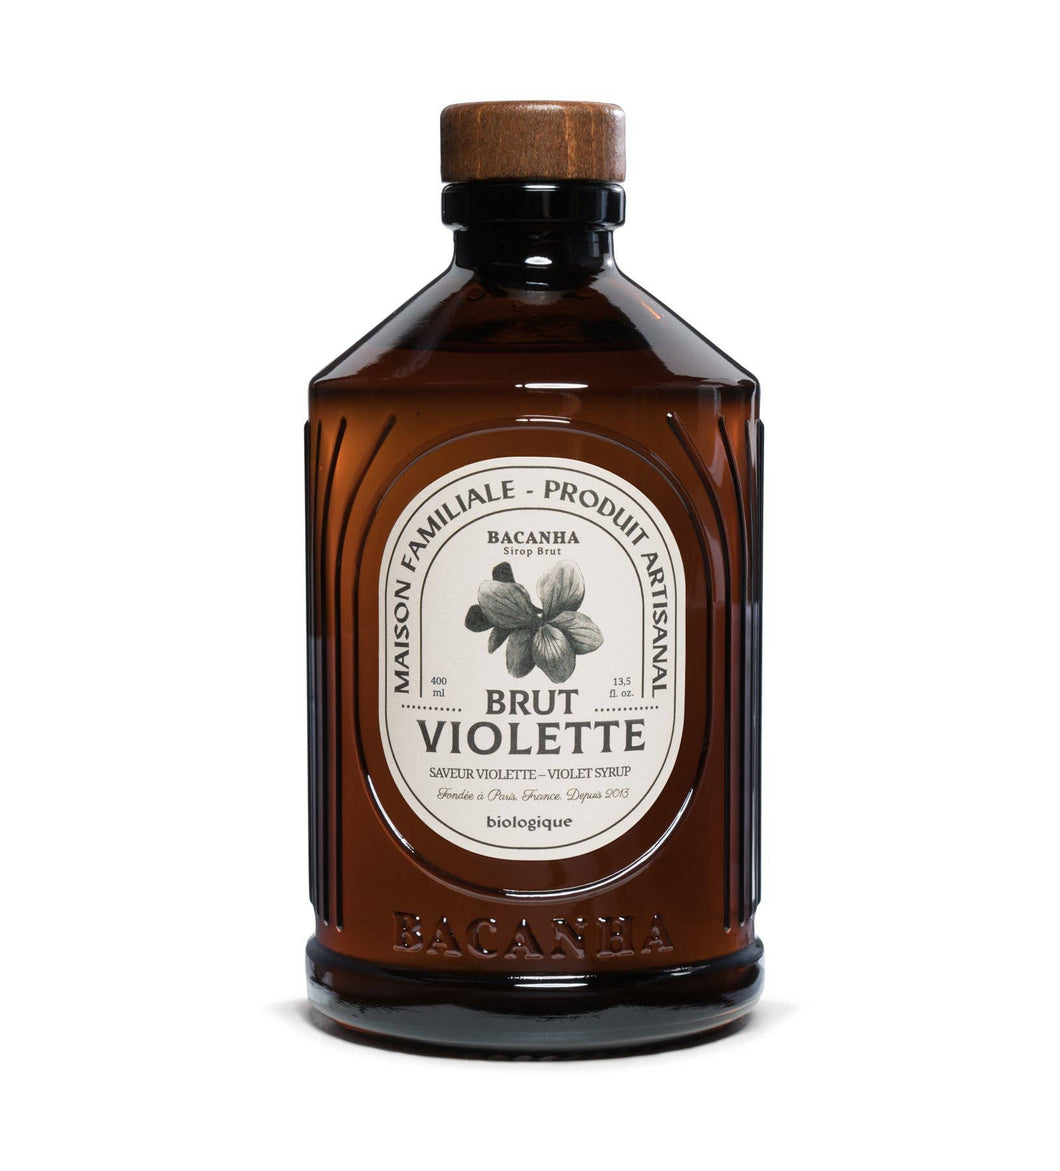 Raw Violet Syrup - 400ml - 13,5 fl. oz.